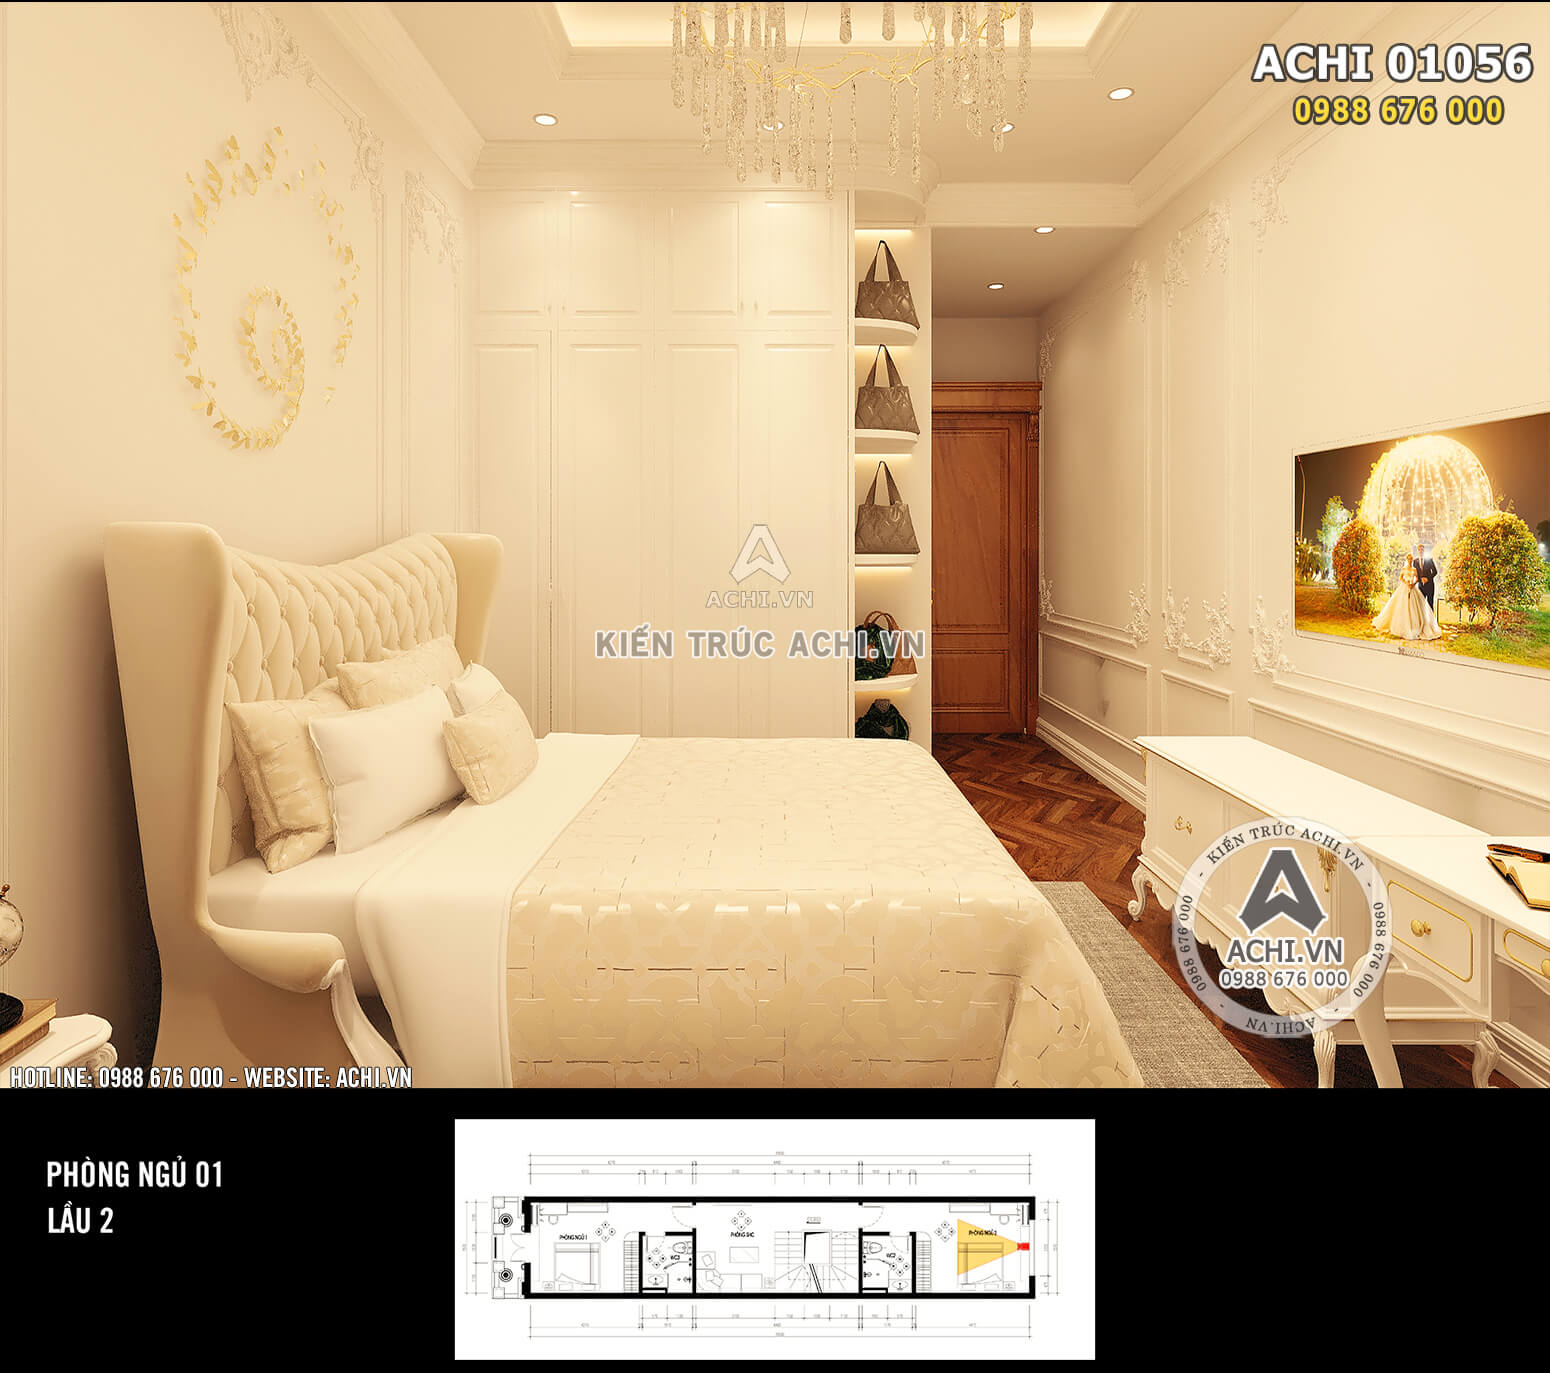 Hình ảnh: Không gian phòng ngủ 1 được thiết kế gọn gàng với các món đồ nội thất